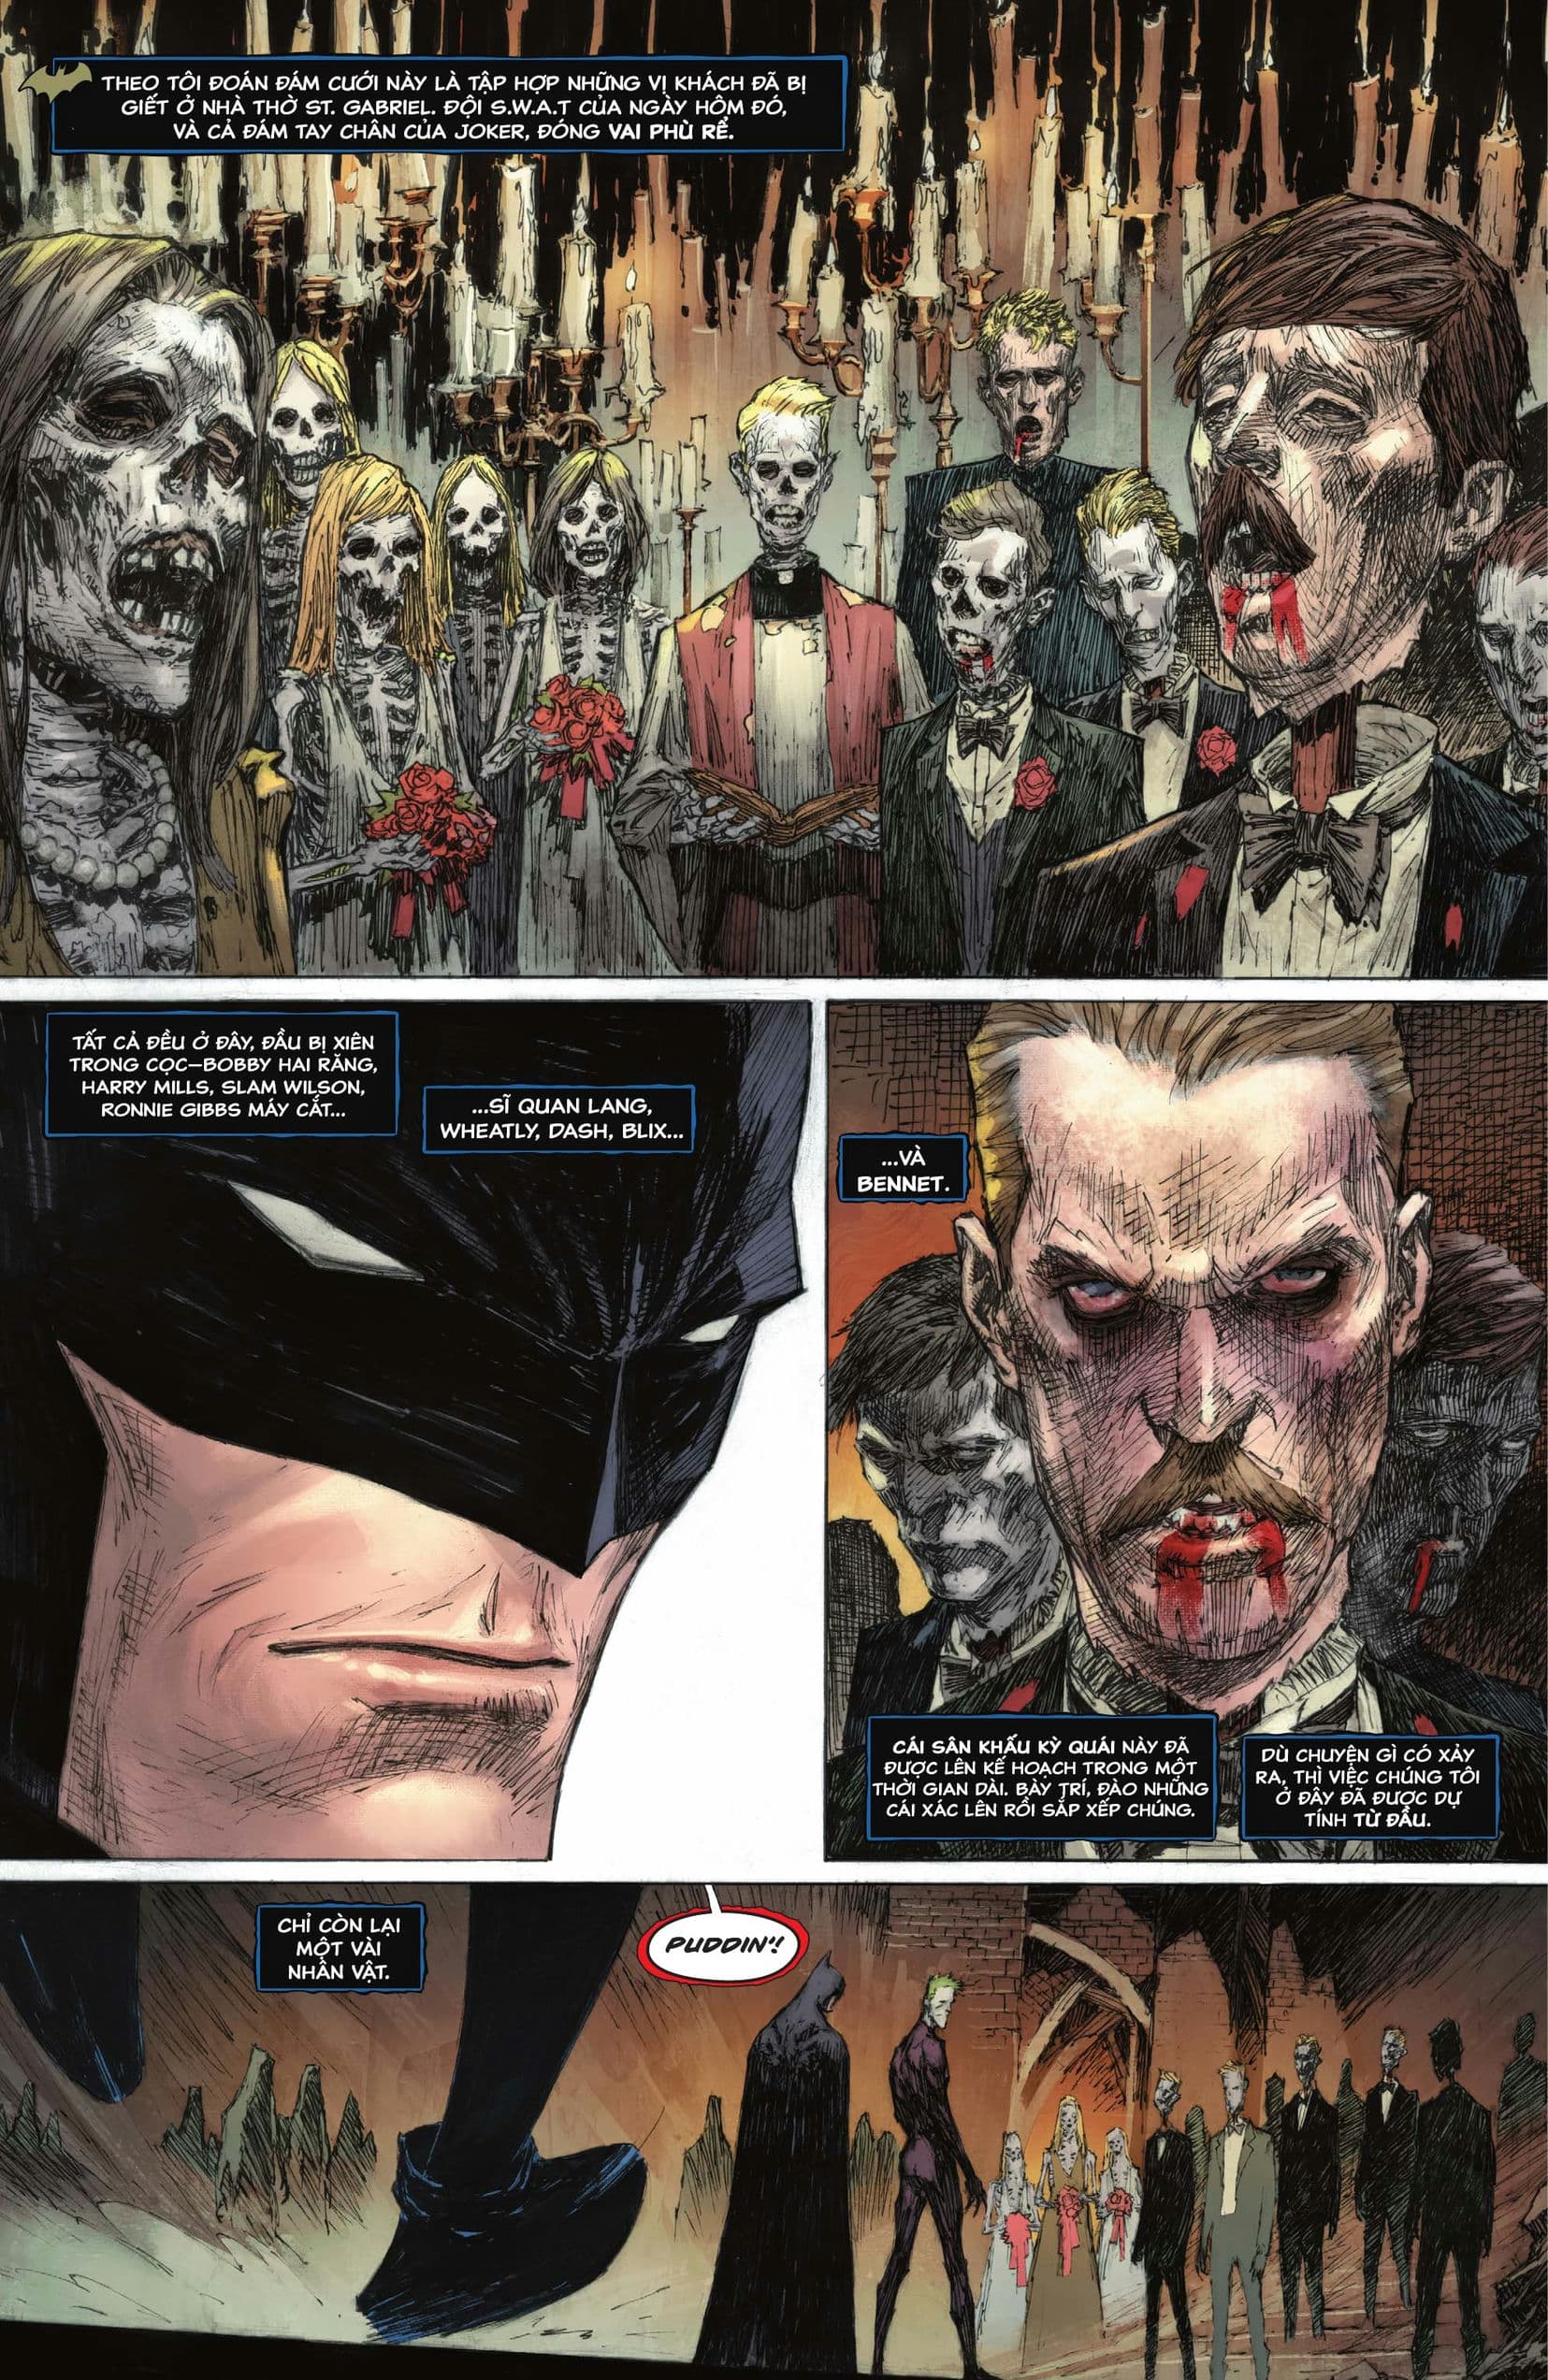 https://langgeek.net/wp-content/webpc-passthru.php?src=https://langgeek.net/wp-content/uploads/2023/04/Batman-_-The-Joker-The-Deadly-Duo-2022-005-022.jpg&nocache=1